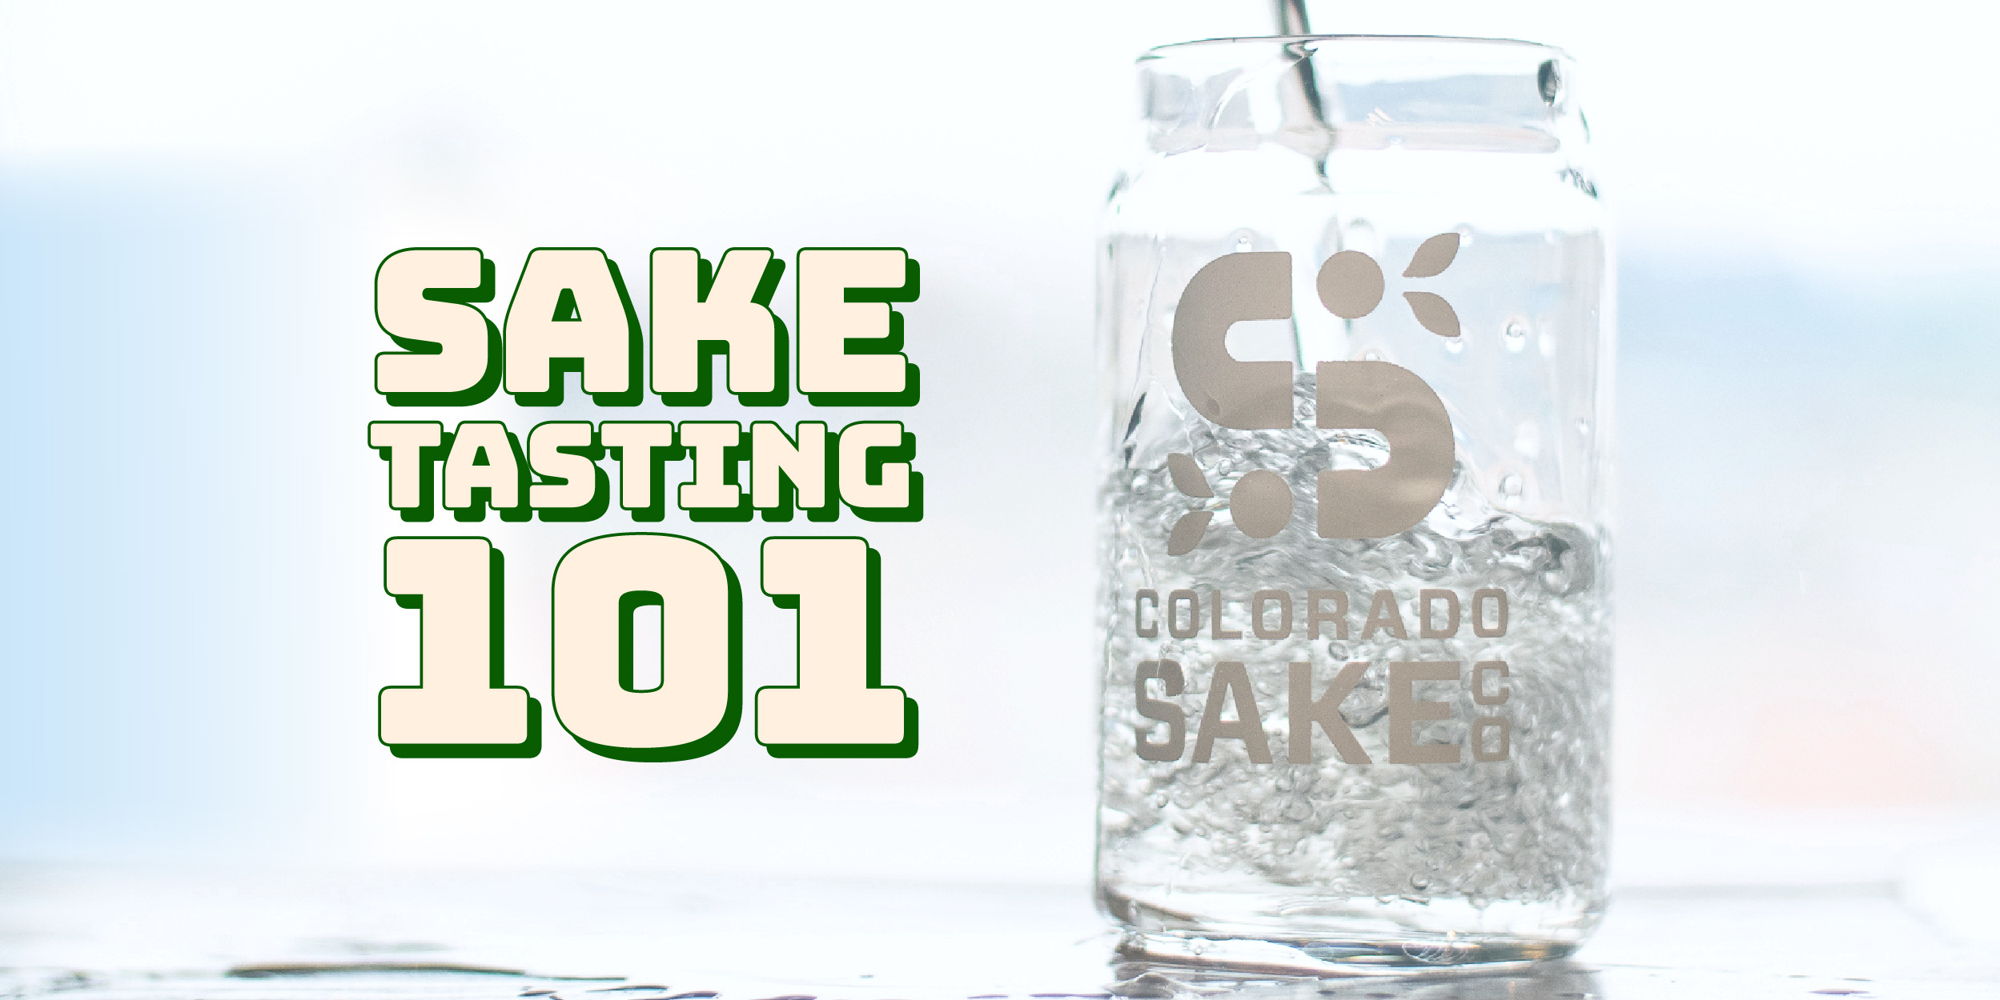 Sake Tasting 101 promotional image